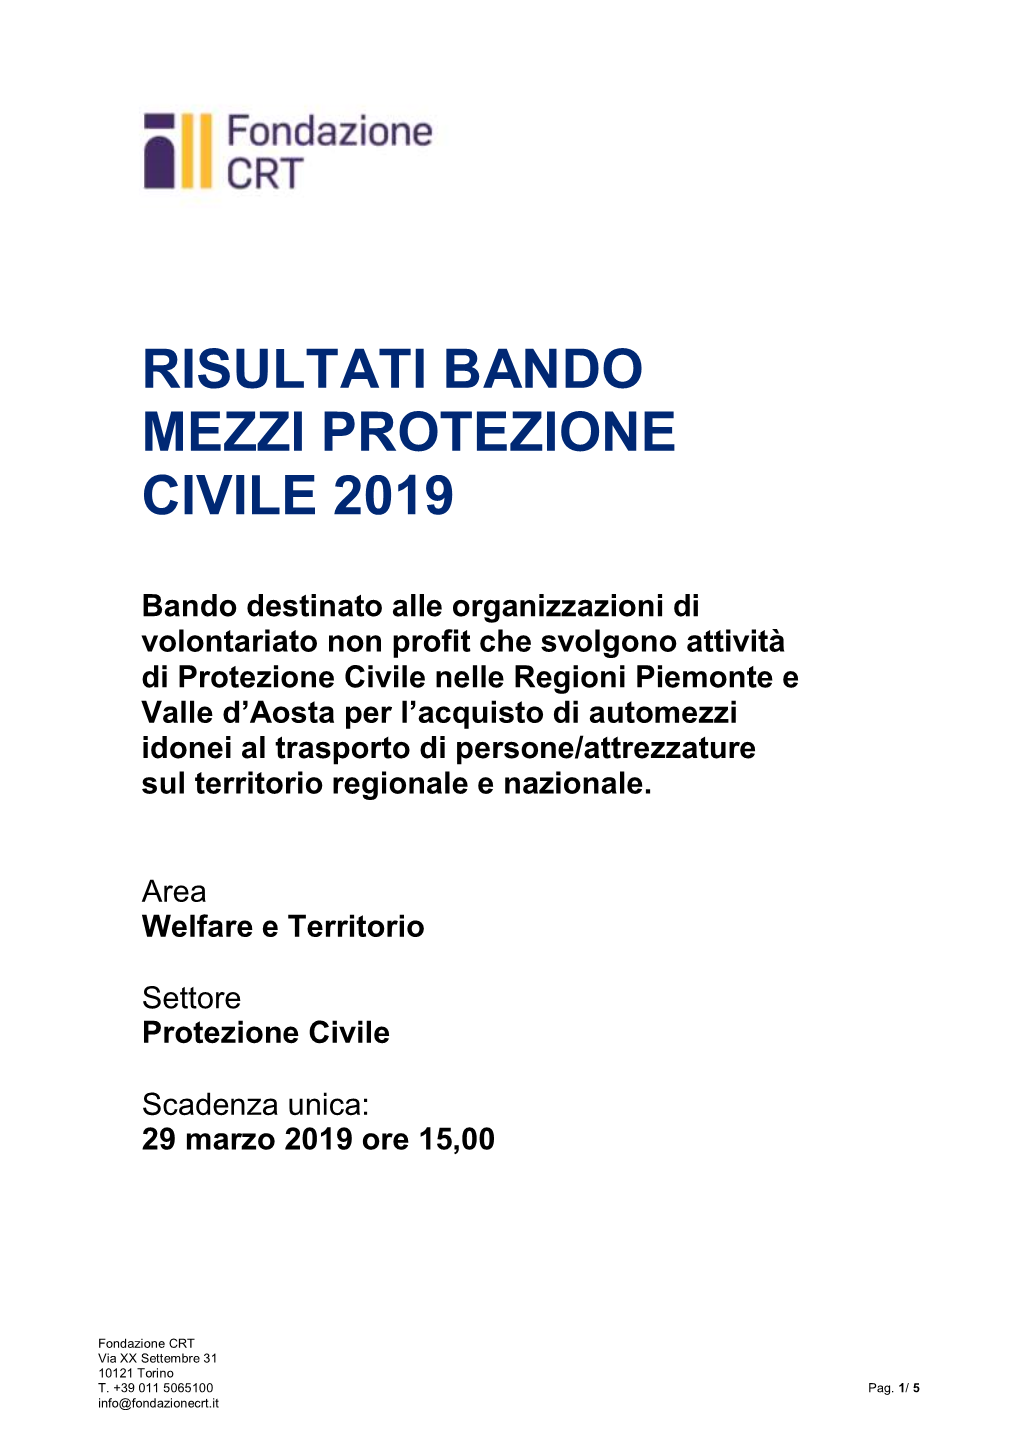 Risultati Bando Mezzi Protezione Civile 2019